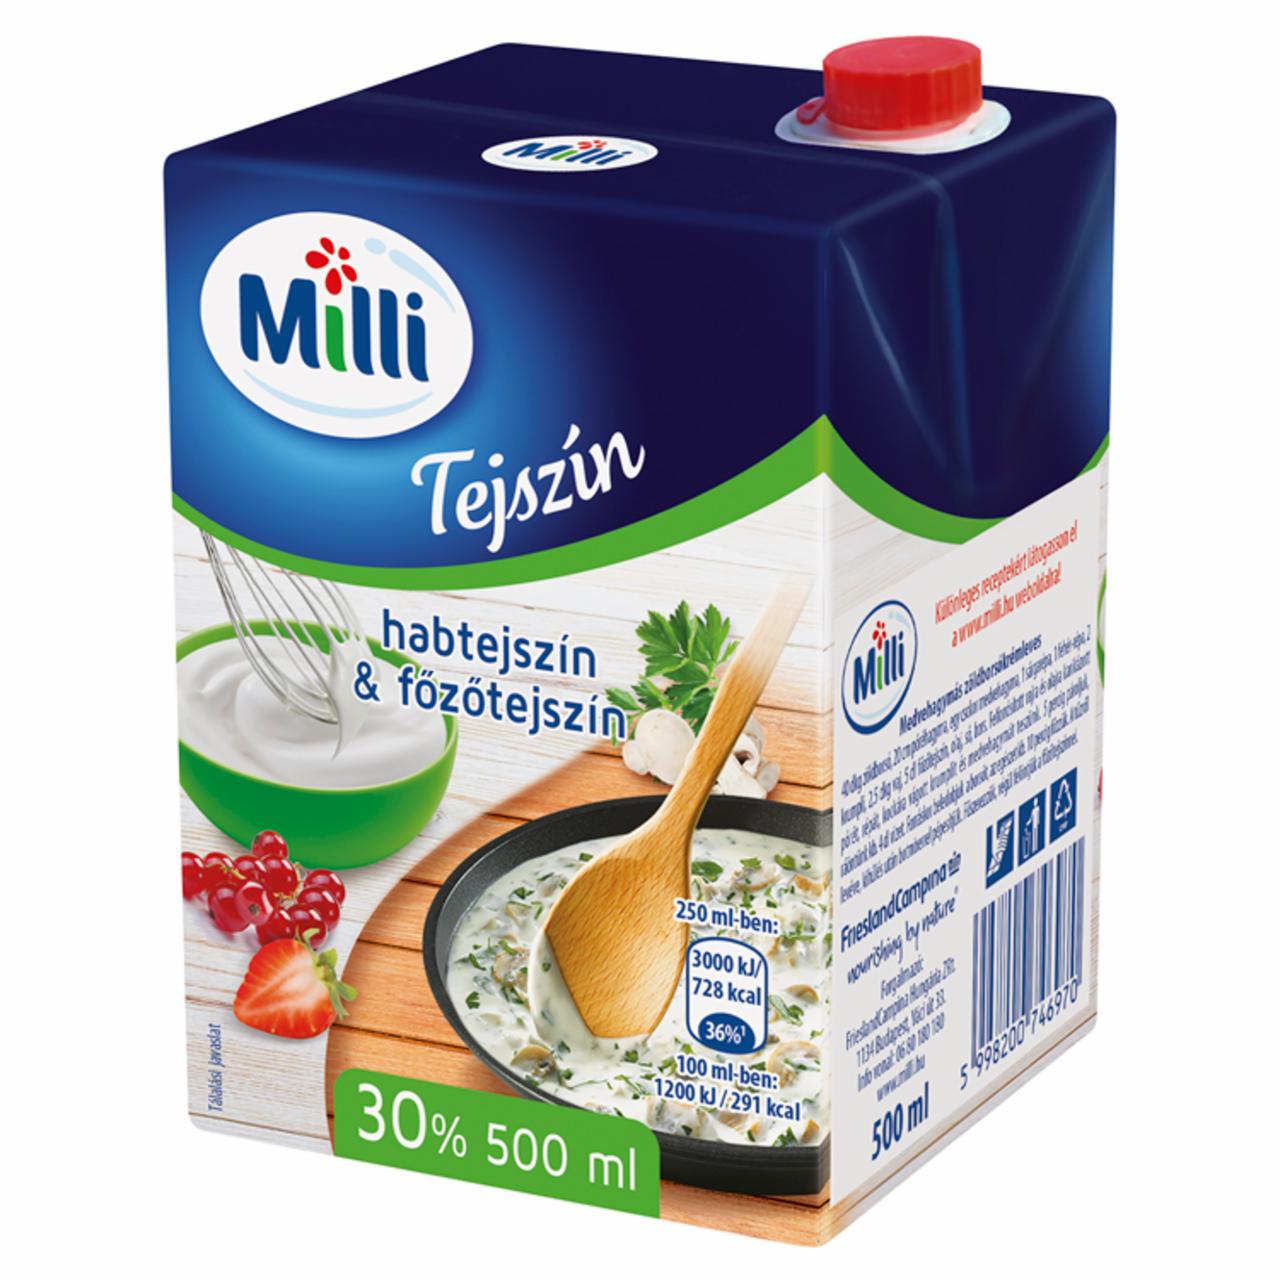 Képek - Milli UHT tejszín 30% 500 ml